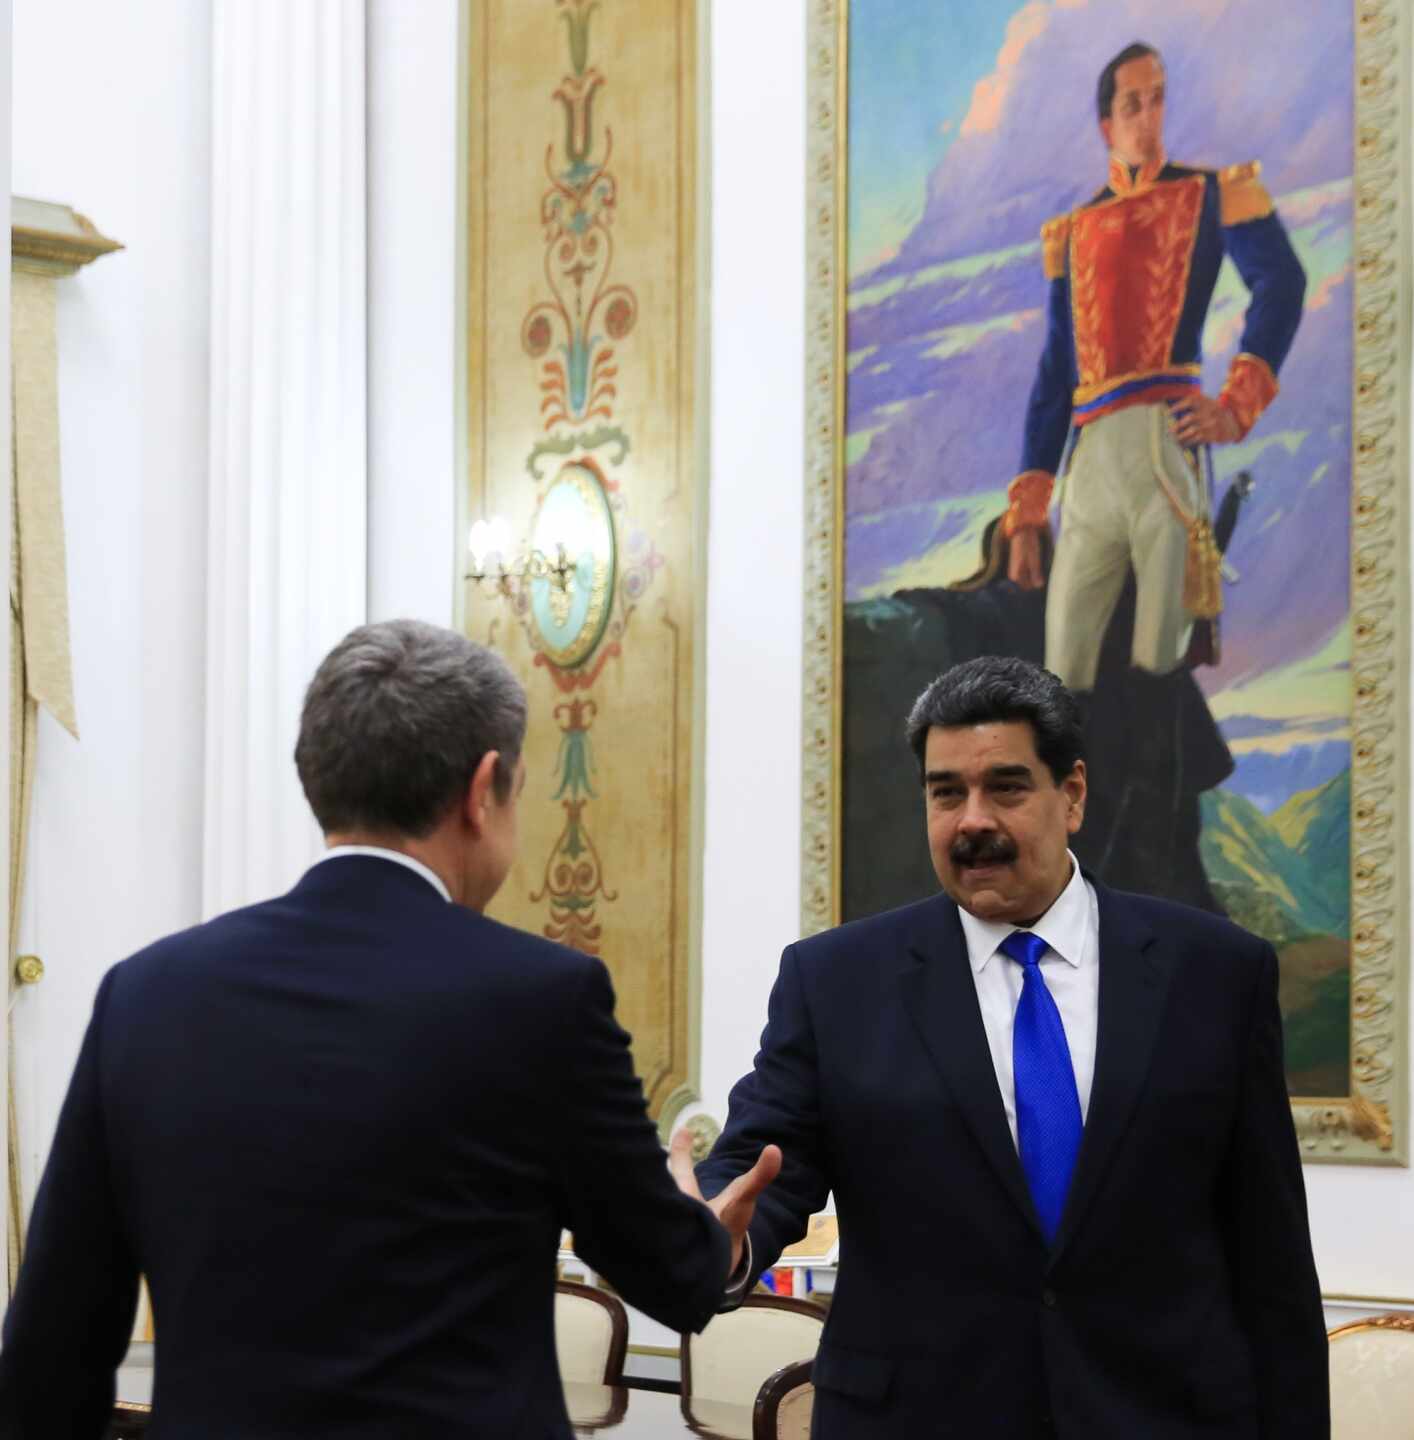 El Gobierno se desmarca de la visita de Zapatero a Maduro y Delcy Rodríguez: “Viajó como ciudadano particular”